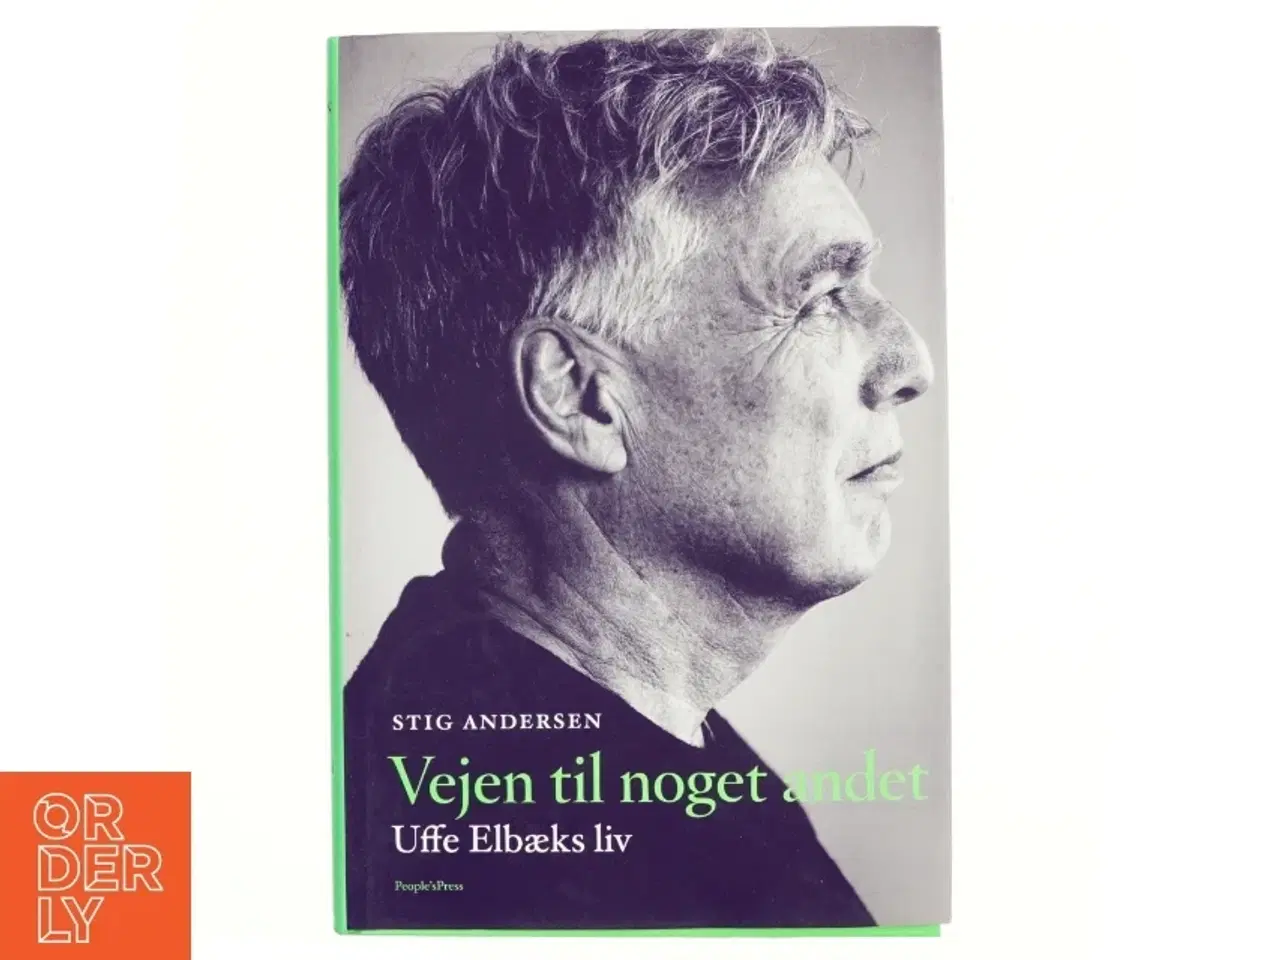 Billede 1 - Vejen til noget andet : Uffe Elbæks liv af Stig Andersen (f. 1949) (Bog)